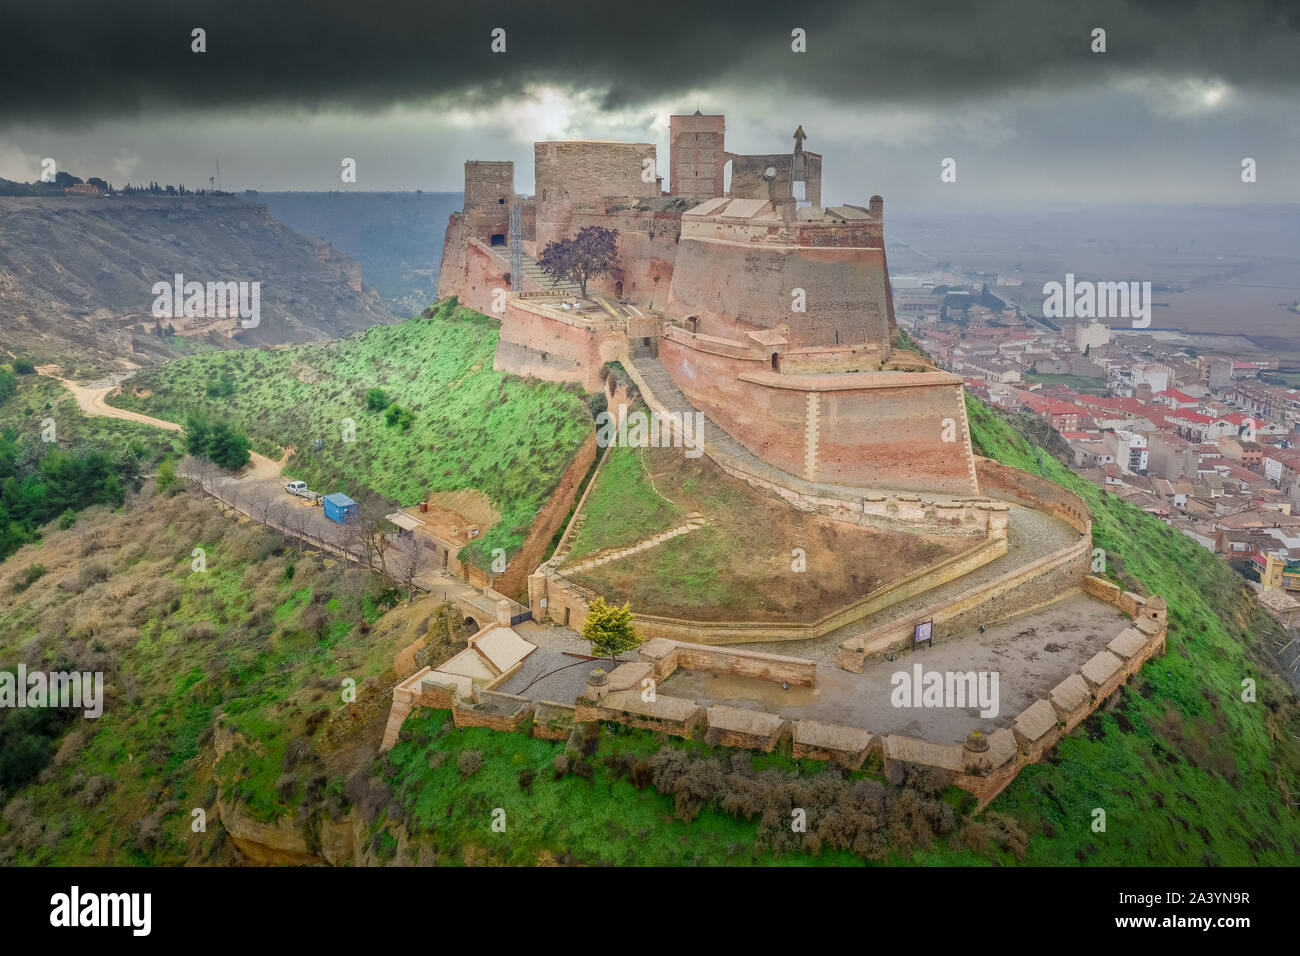 Vue aérienne de la forteresse de Monzon un ancien château chevalier Templer avec origines arabes dans la région de l''Aragon Espagne Banque D'Images